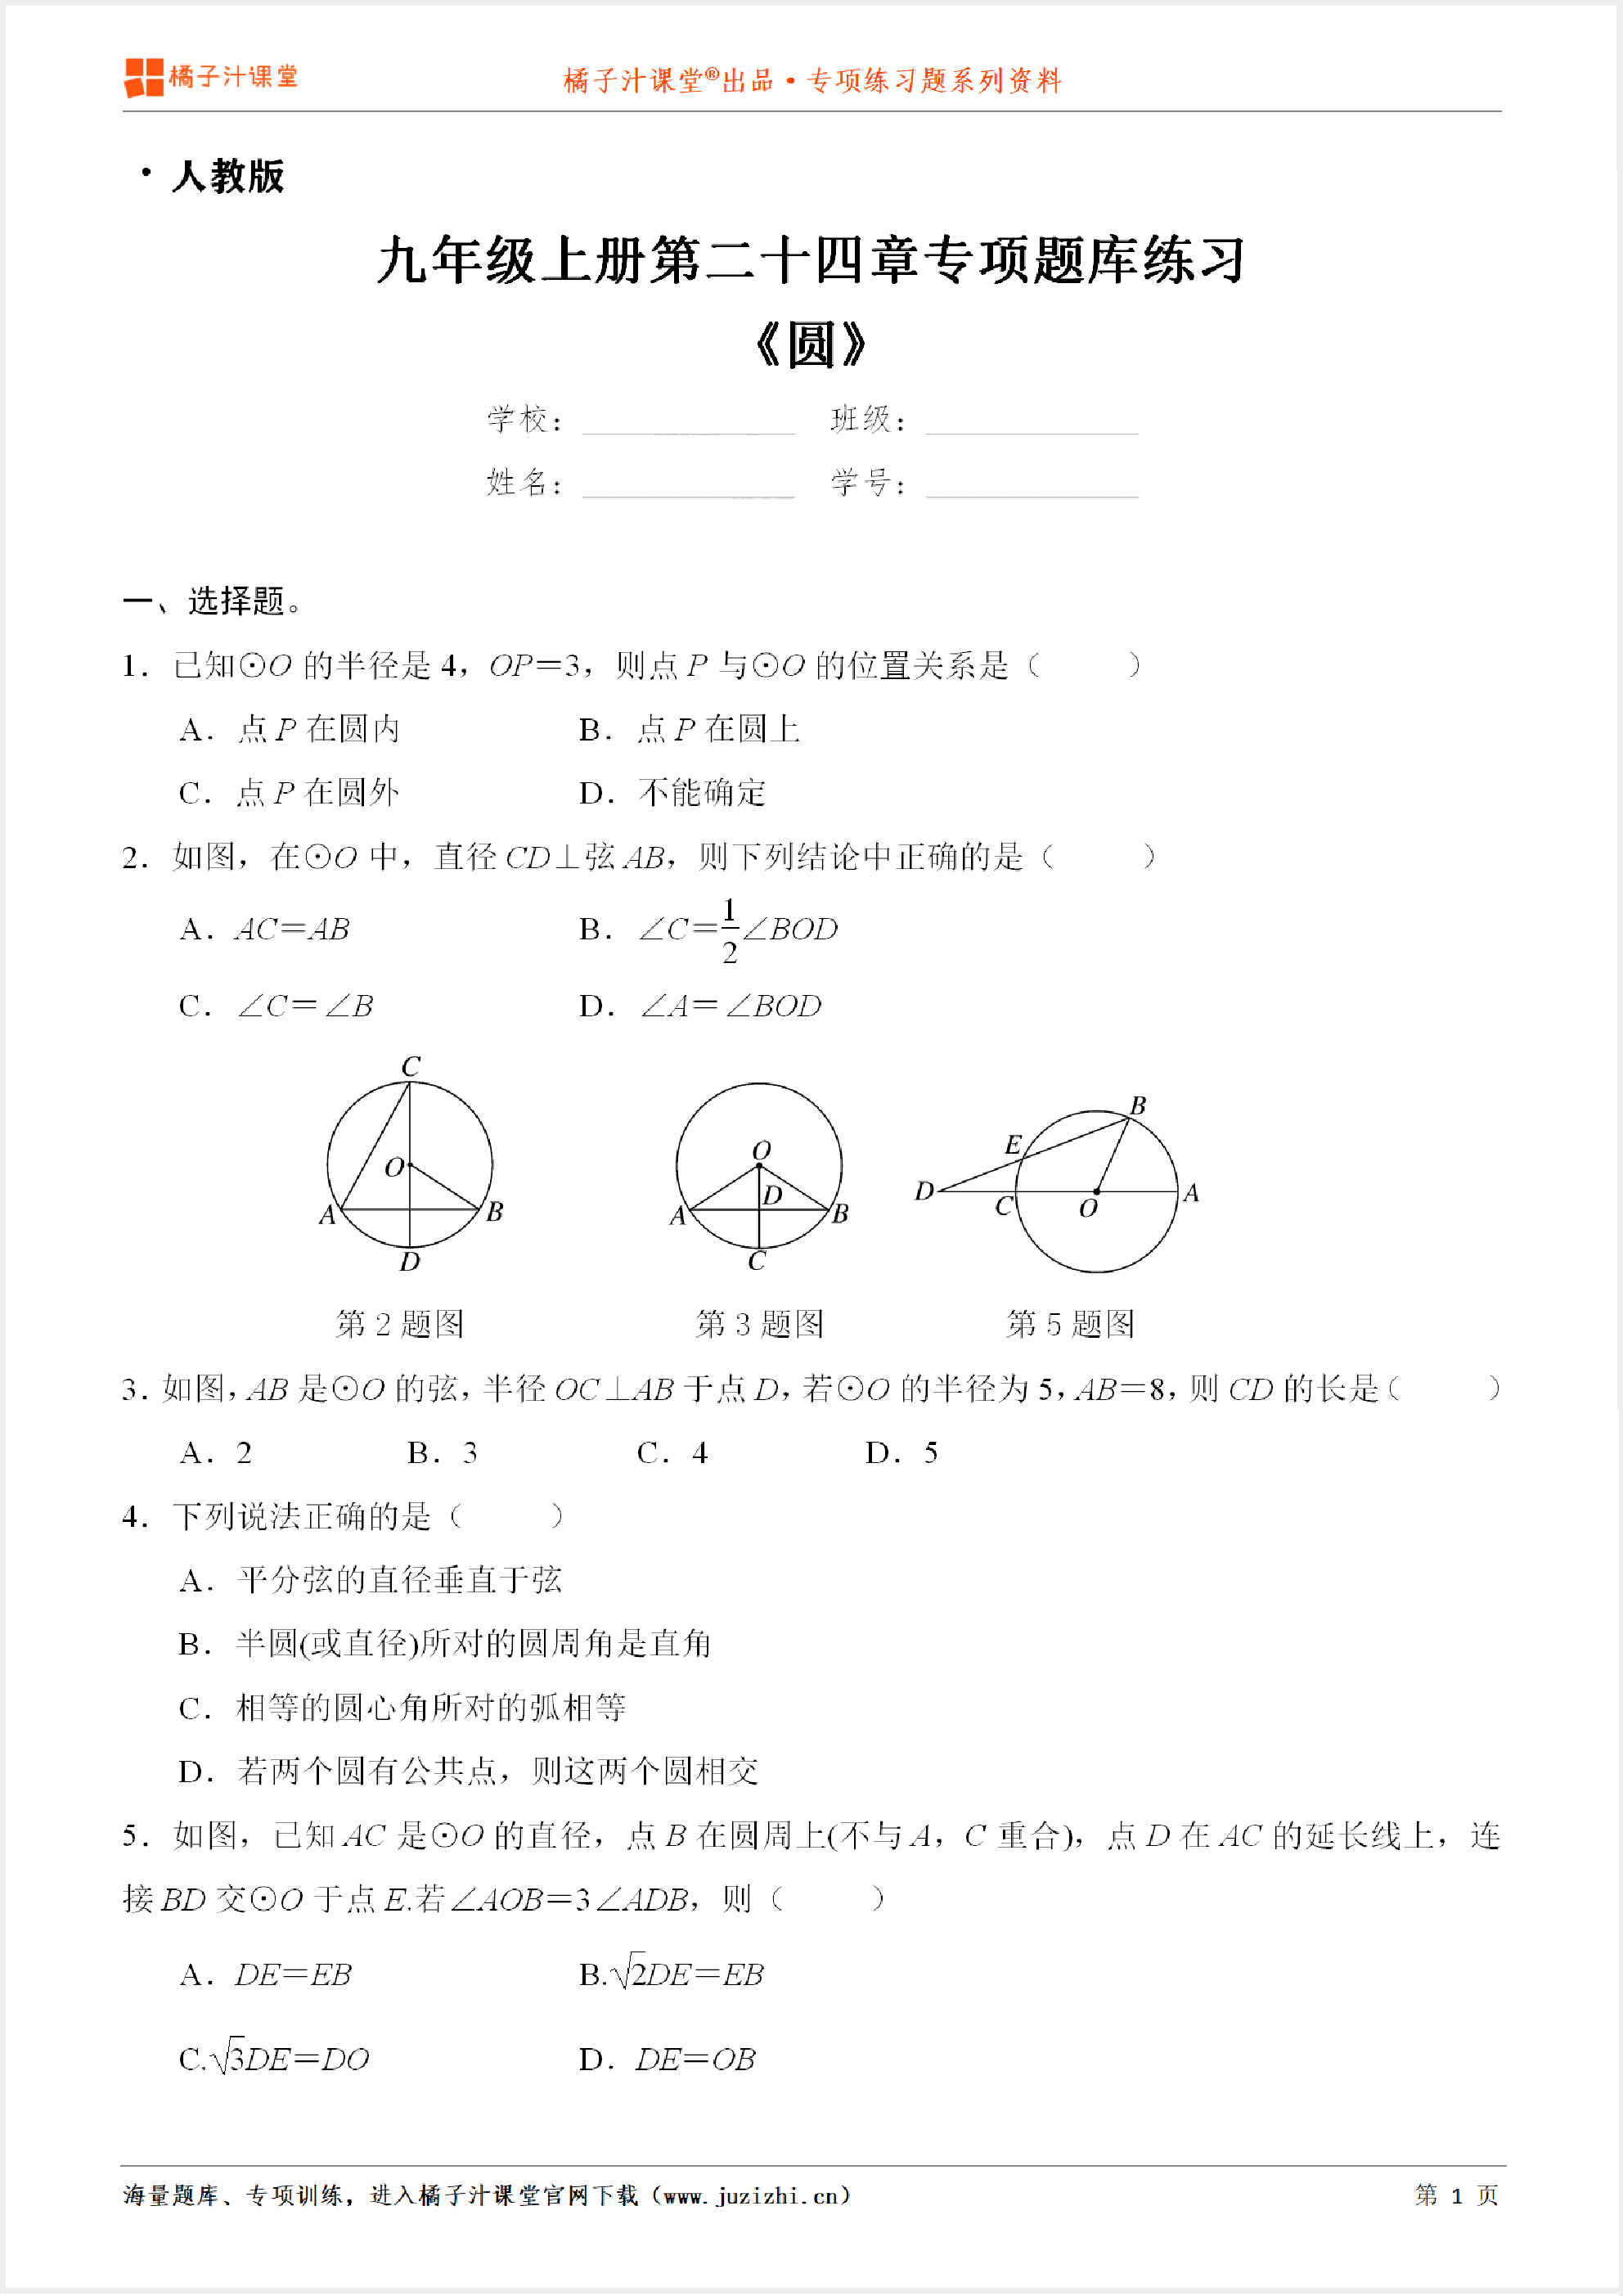 【人教版数学】九年级上册第二十四章《圆》专项练习题